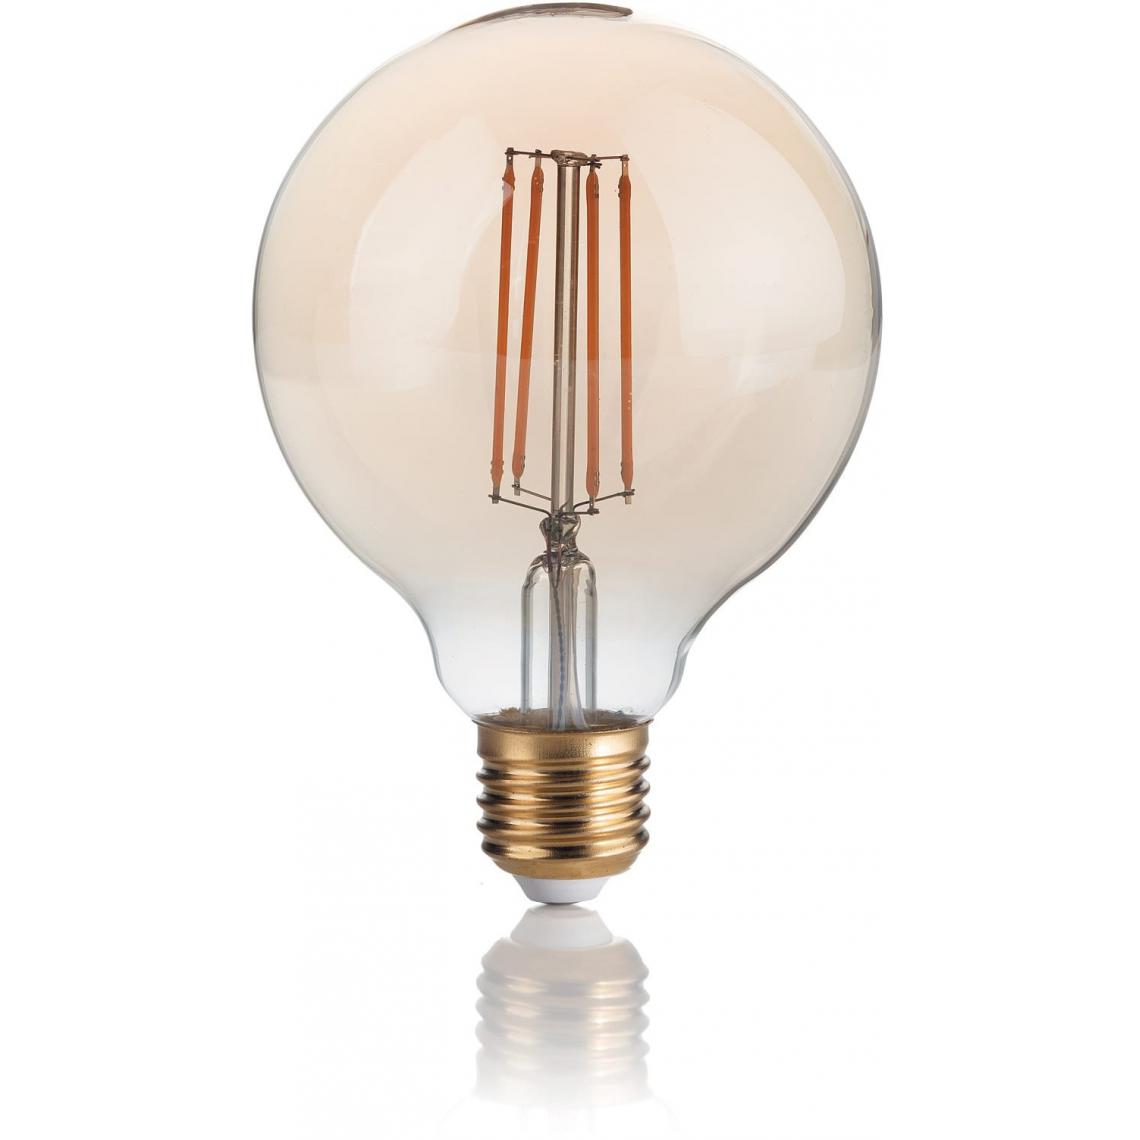 Ideal Lux - AMPOULES IDEAL LUX LEDVIN-151717-E27-4W - Ampoules LED